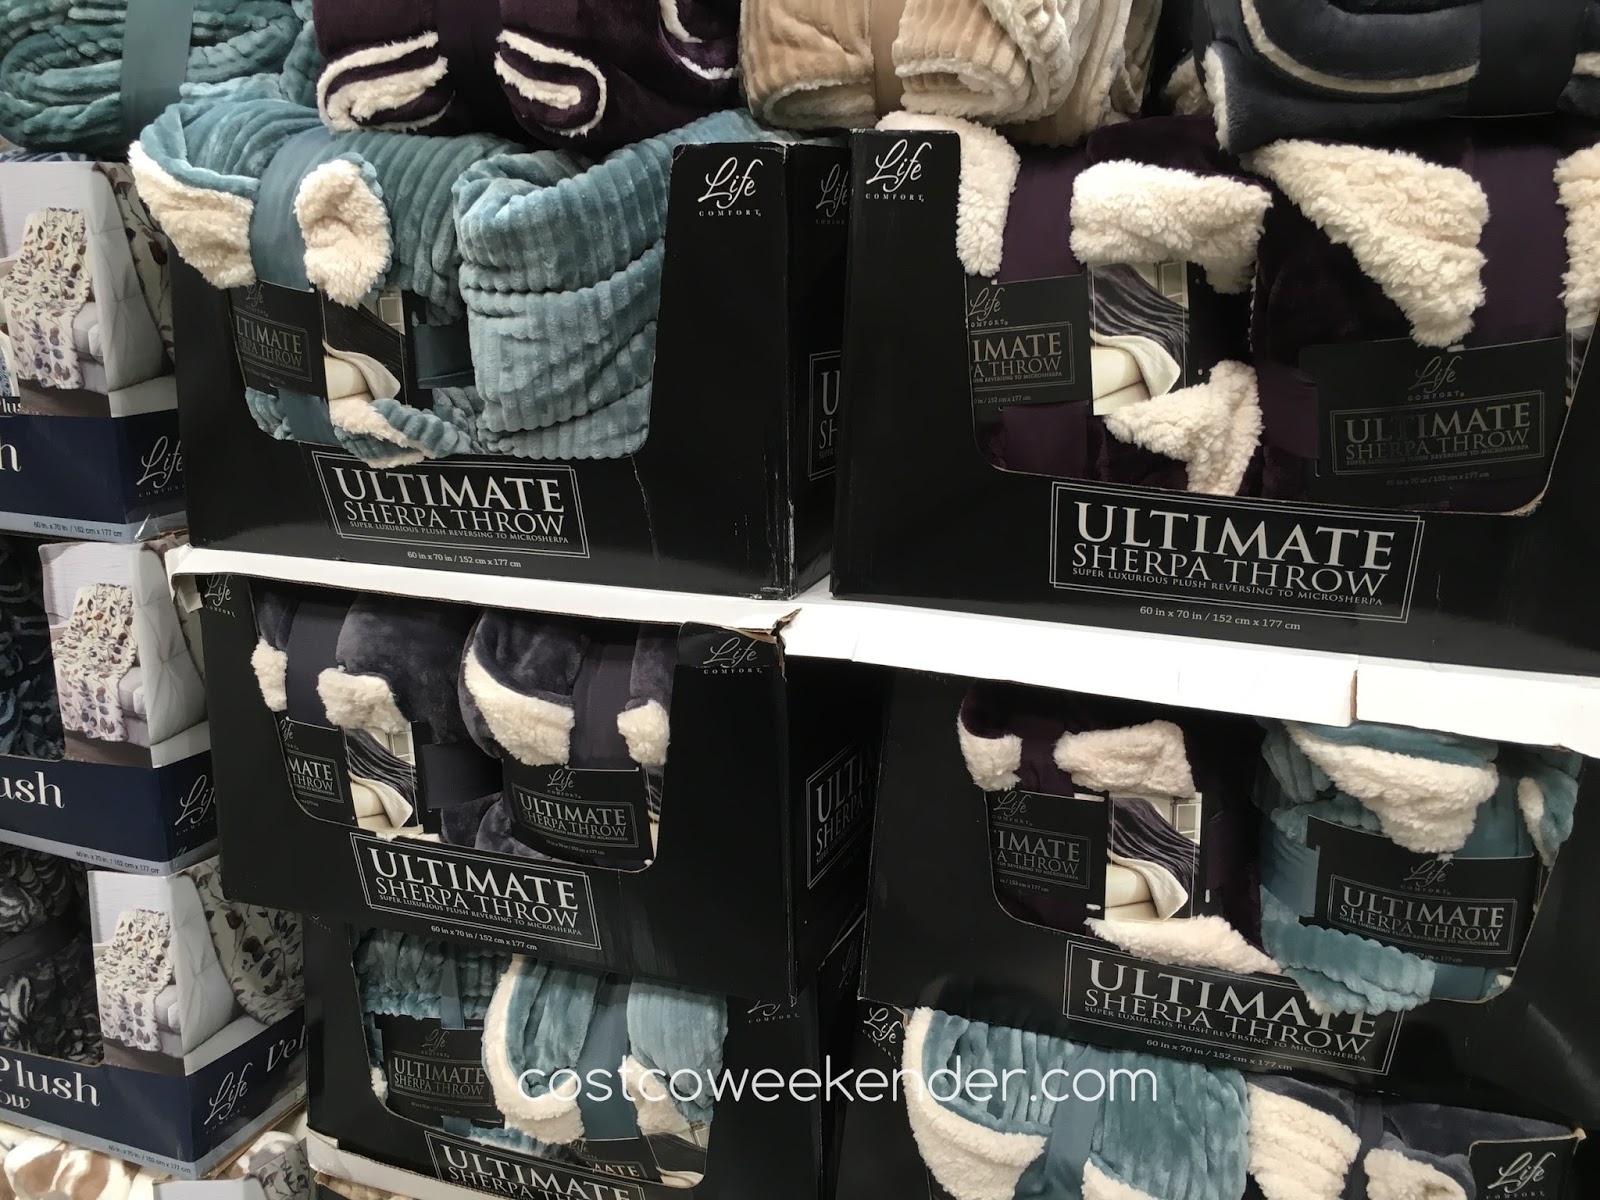 Life Comfort Ultimate Sherpa Throw Blanket (60" x 70") | Costco Weekender